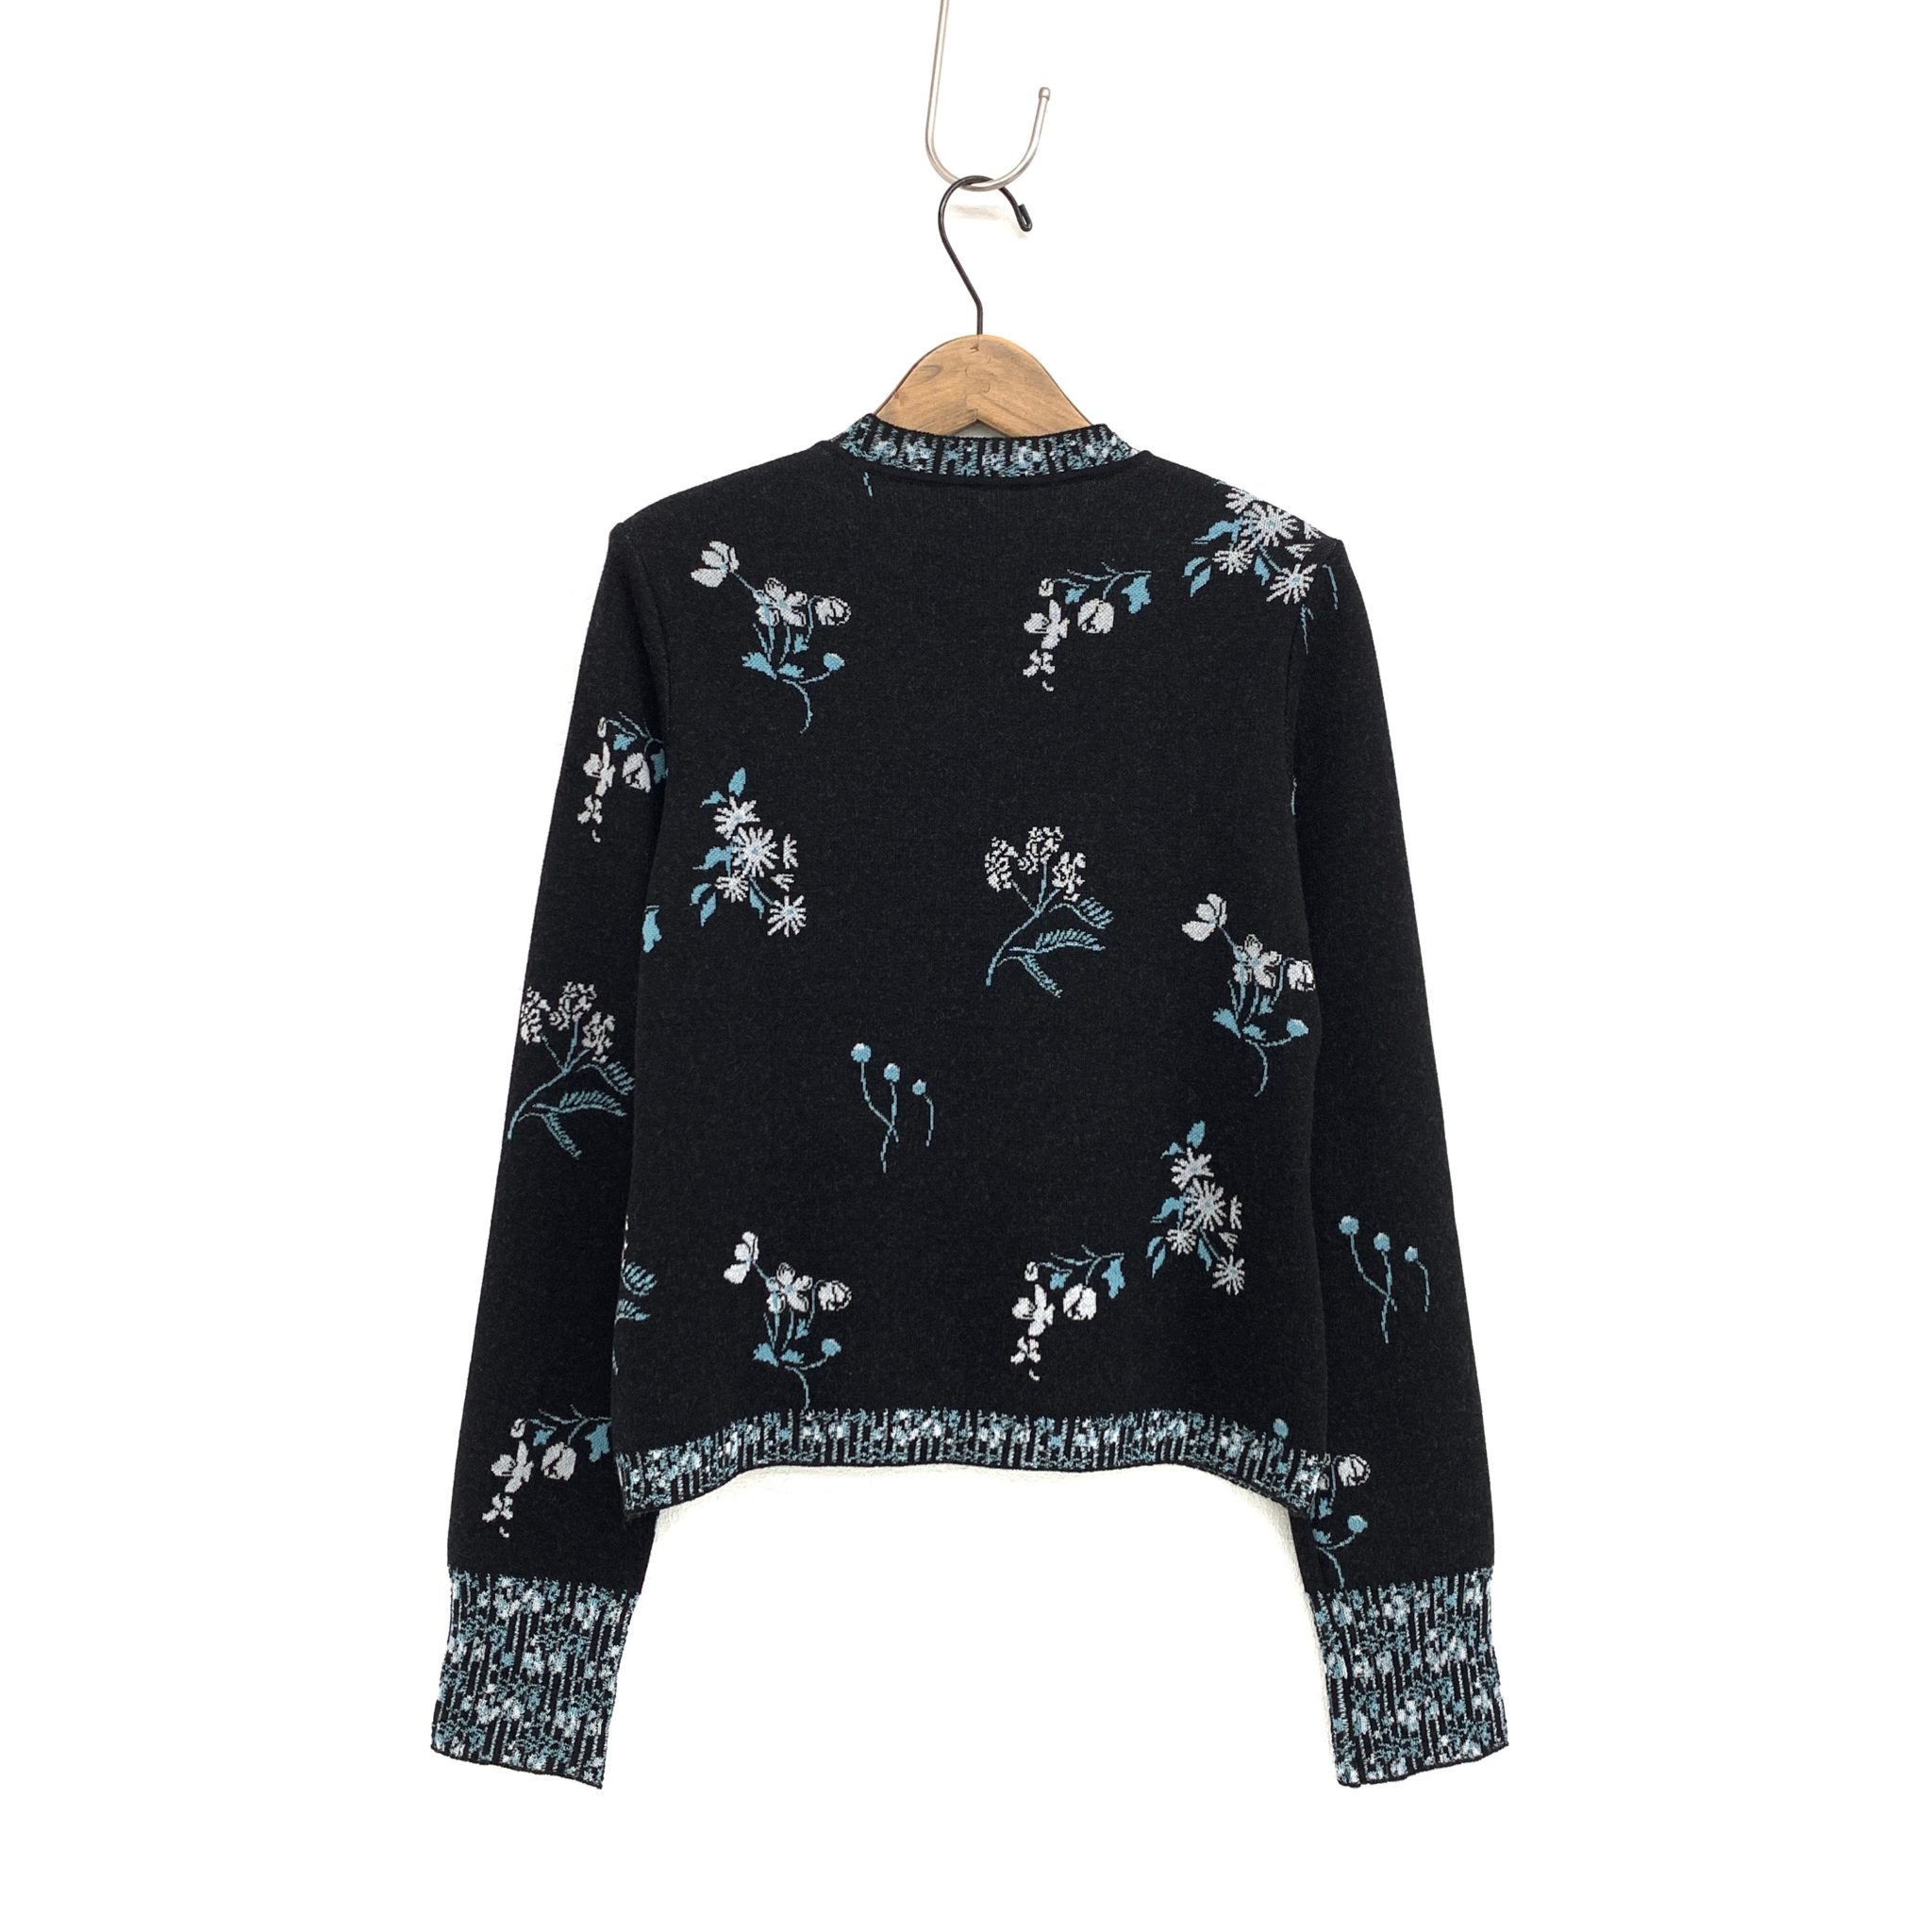 マメクロゴウチ Floral Jacquard Knitted Top MM22PF-KN730 ブラック